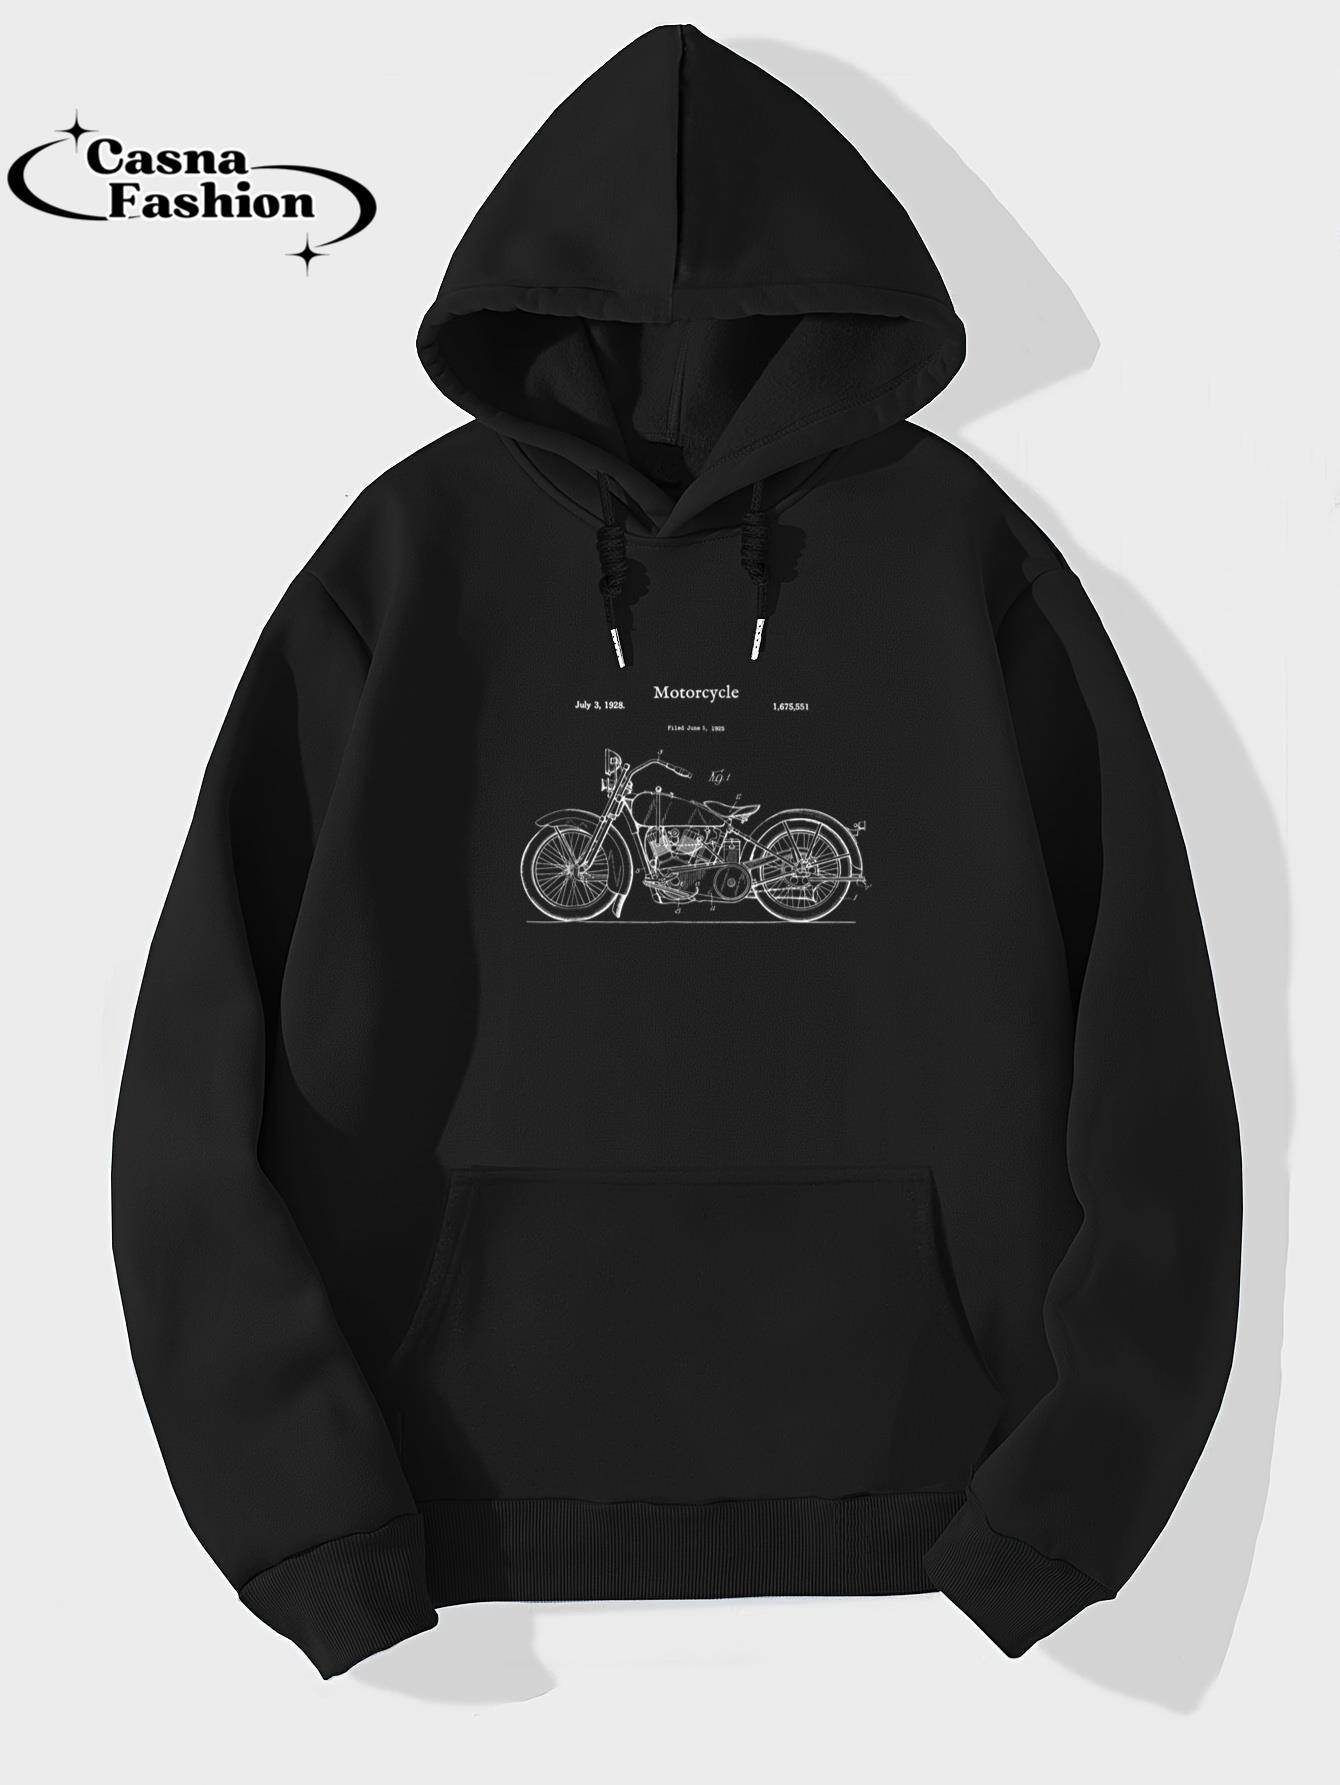 casnafashion_Hoodie_Vintage Street Bike Blueprint Shirt - Motorcycle Biker Tee_hoodie_black hoodie